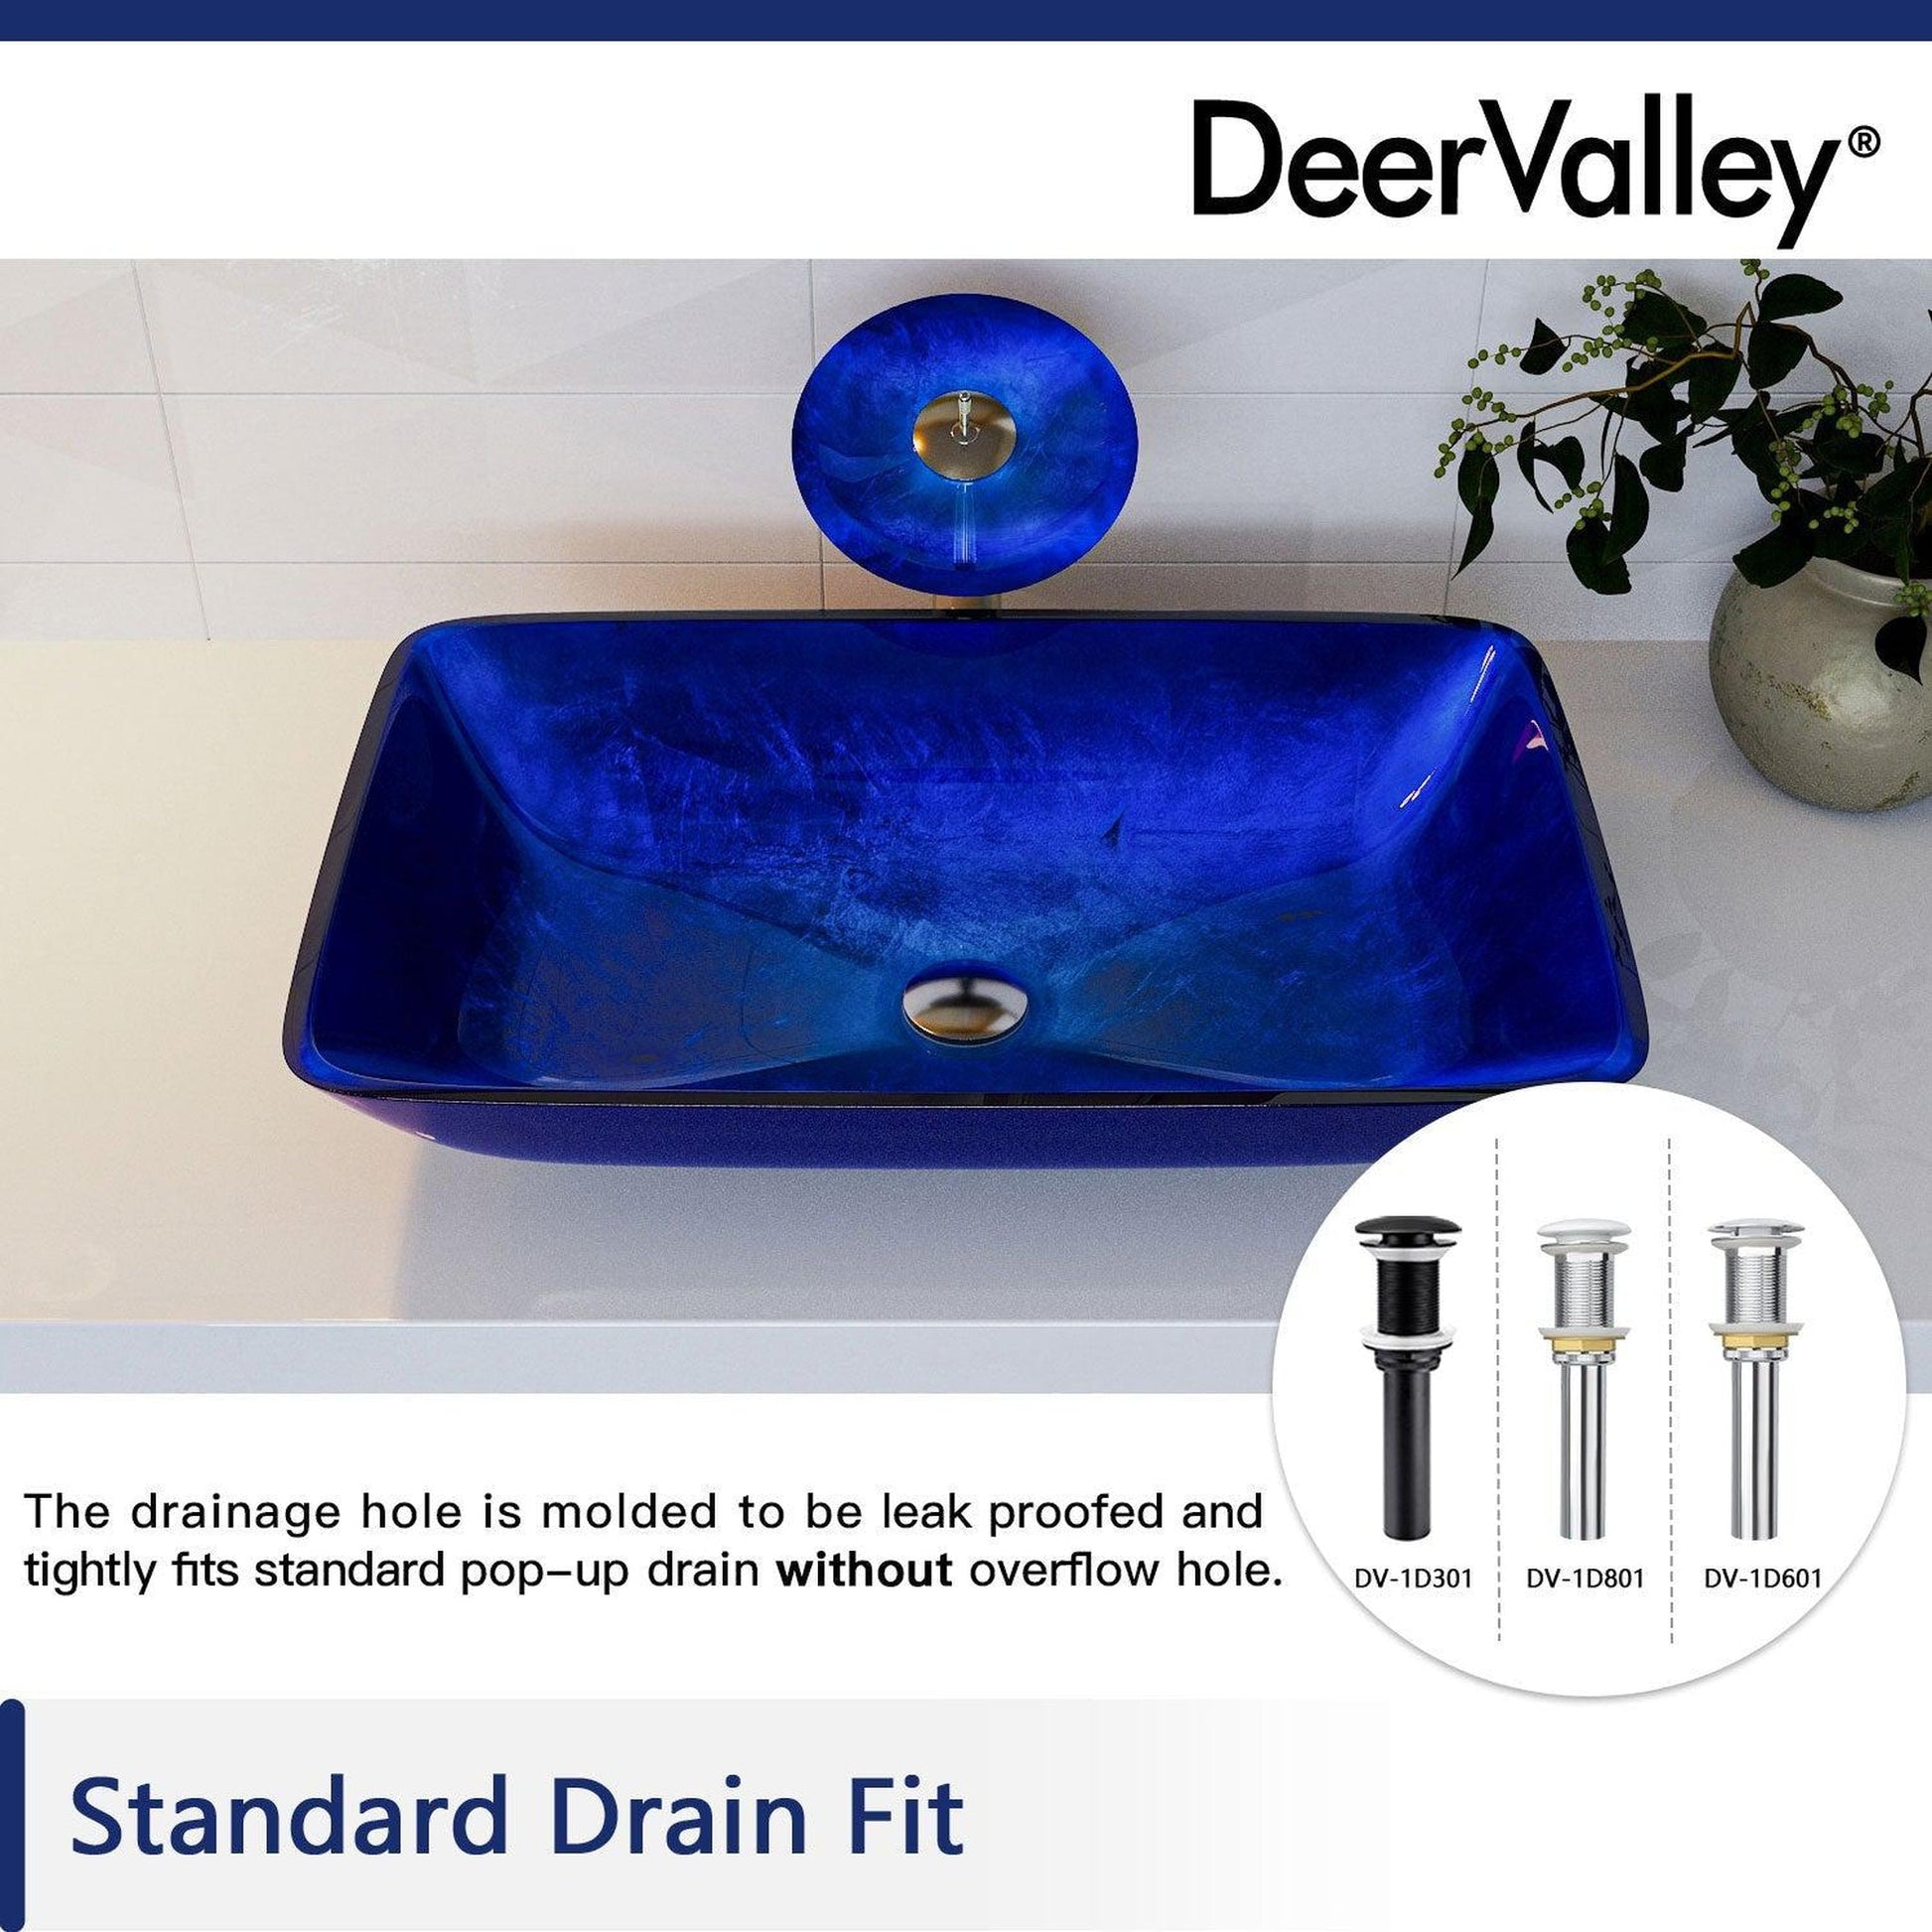 DeerValley Prism 22" Rectangular Blue Tempered Glass Bathroom Vessel Sink